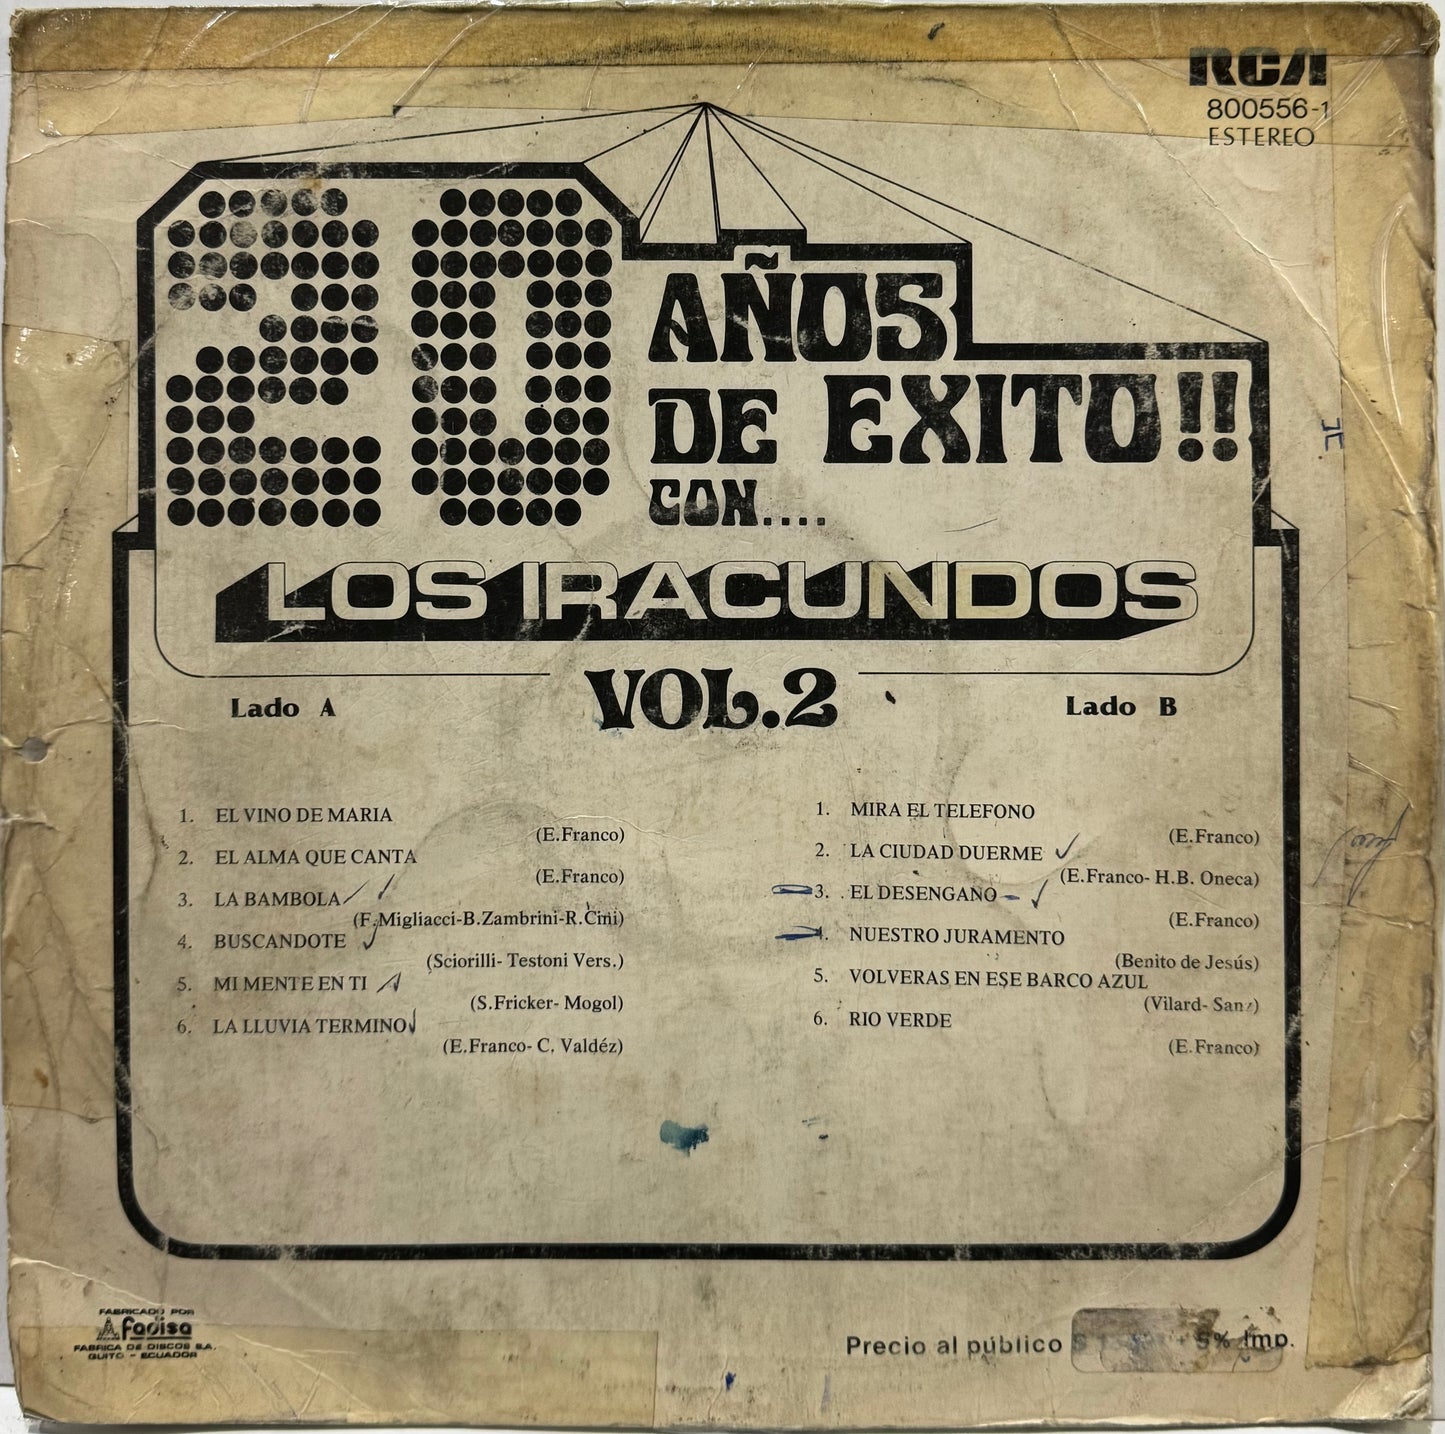 LOS IRACUNDOS - 20 AÑOS DE EXITOS VOL.2  LP